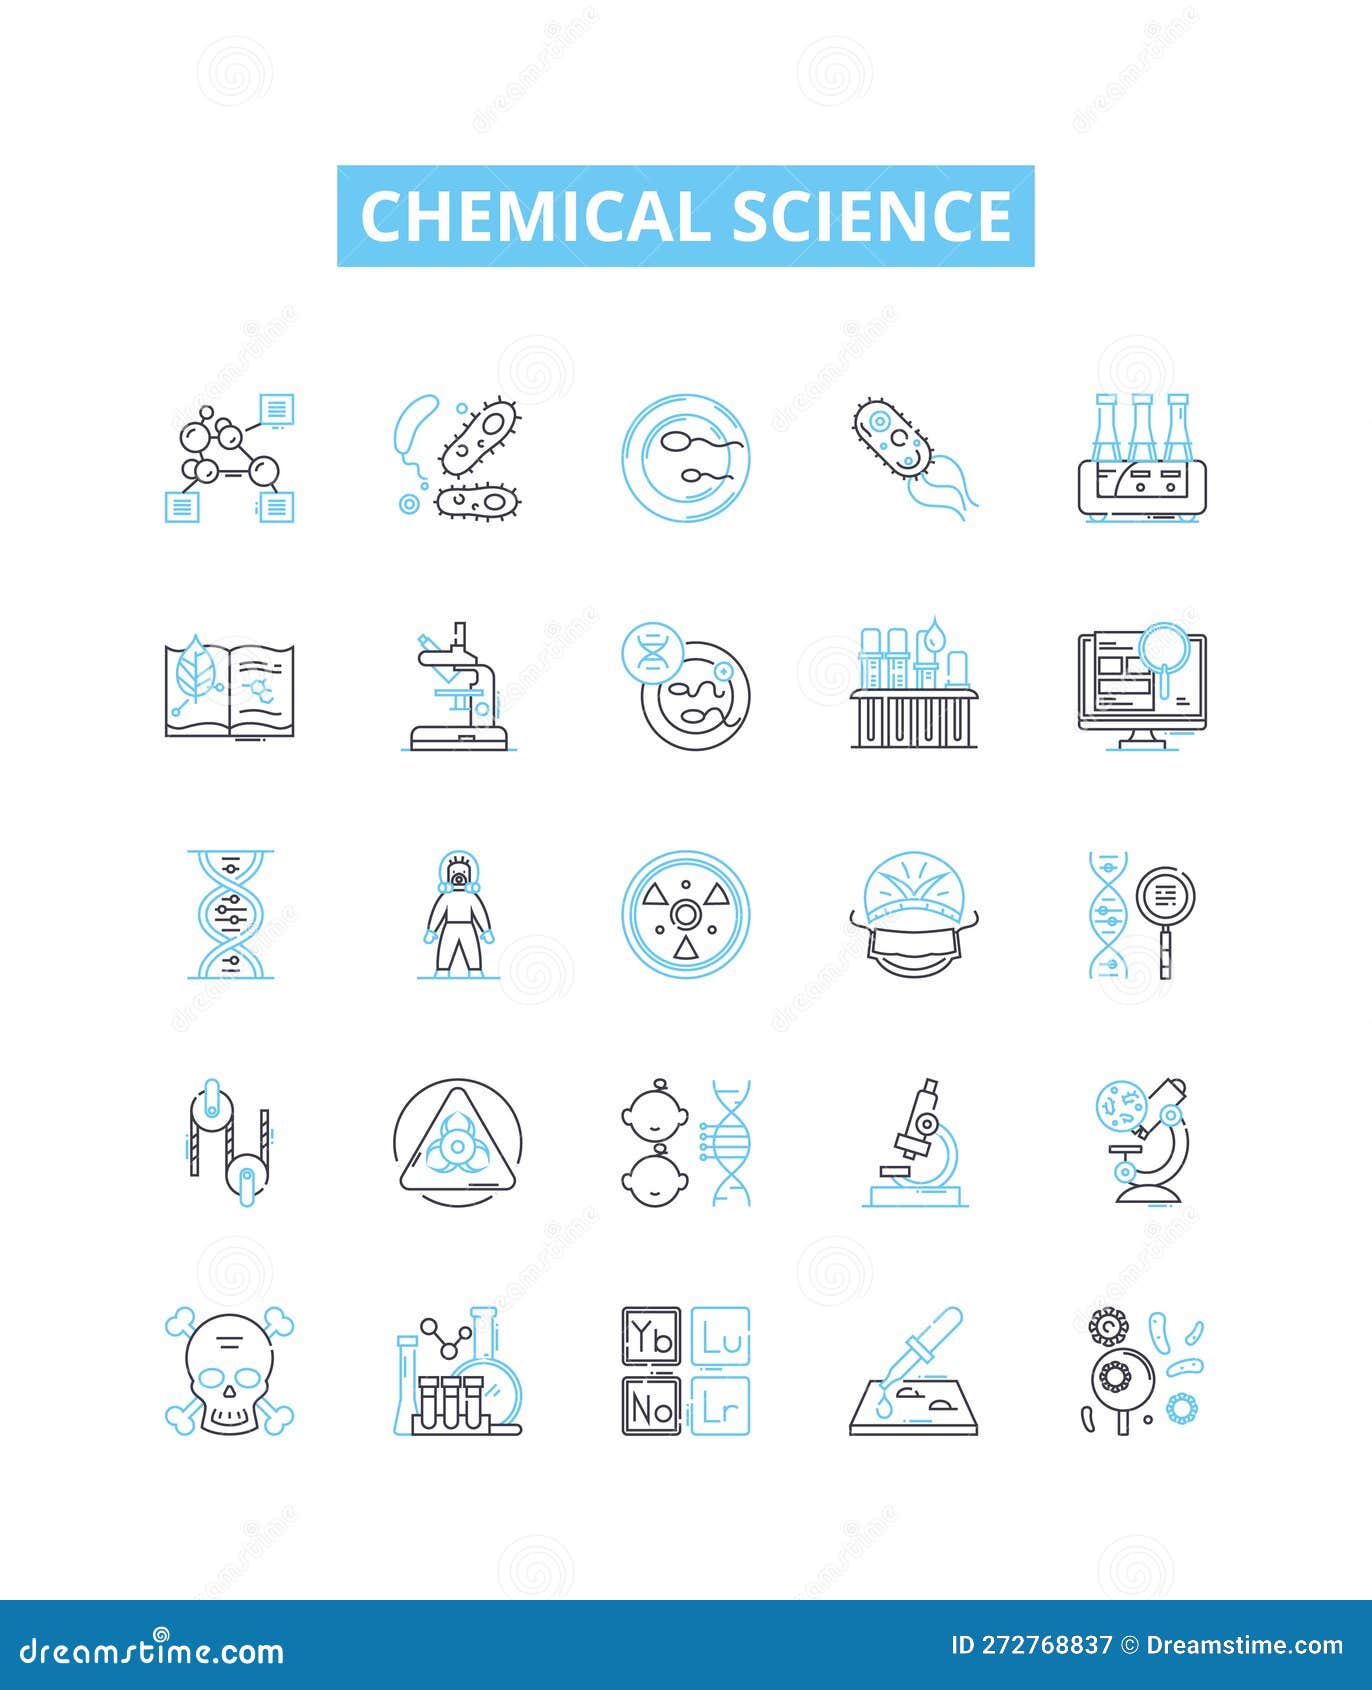 chemical science  line icons set. chemistry, molecules, reactants, compounds, s, atoms, formulas